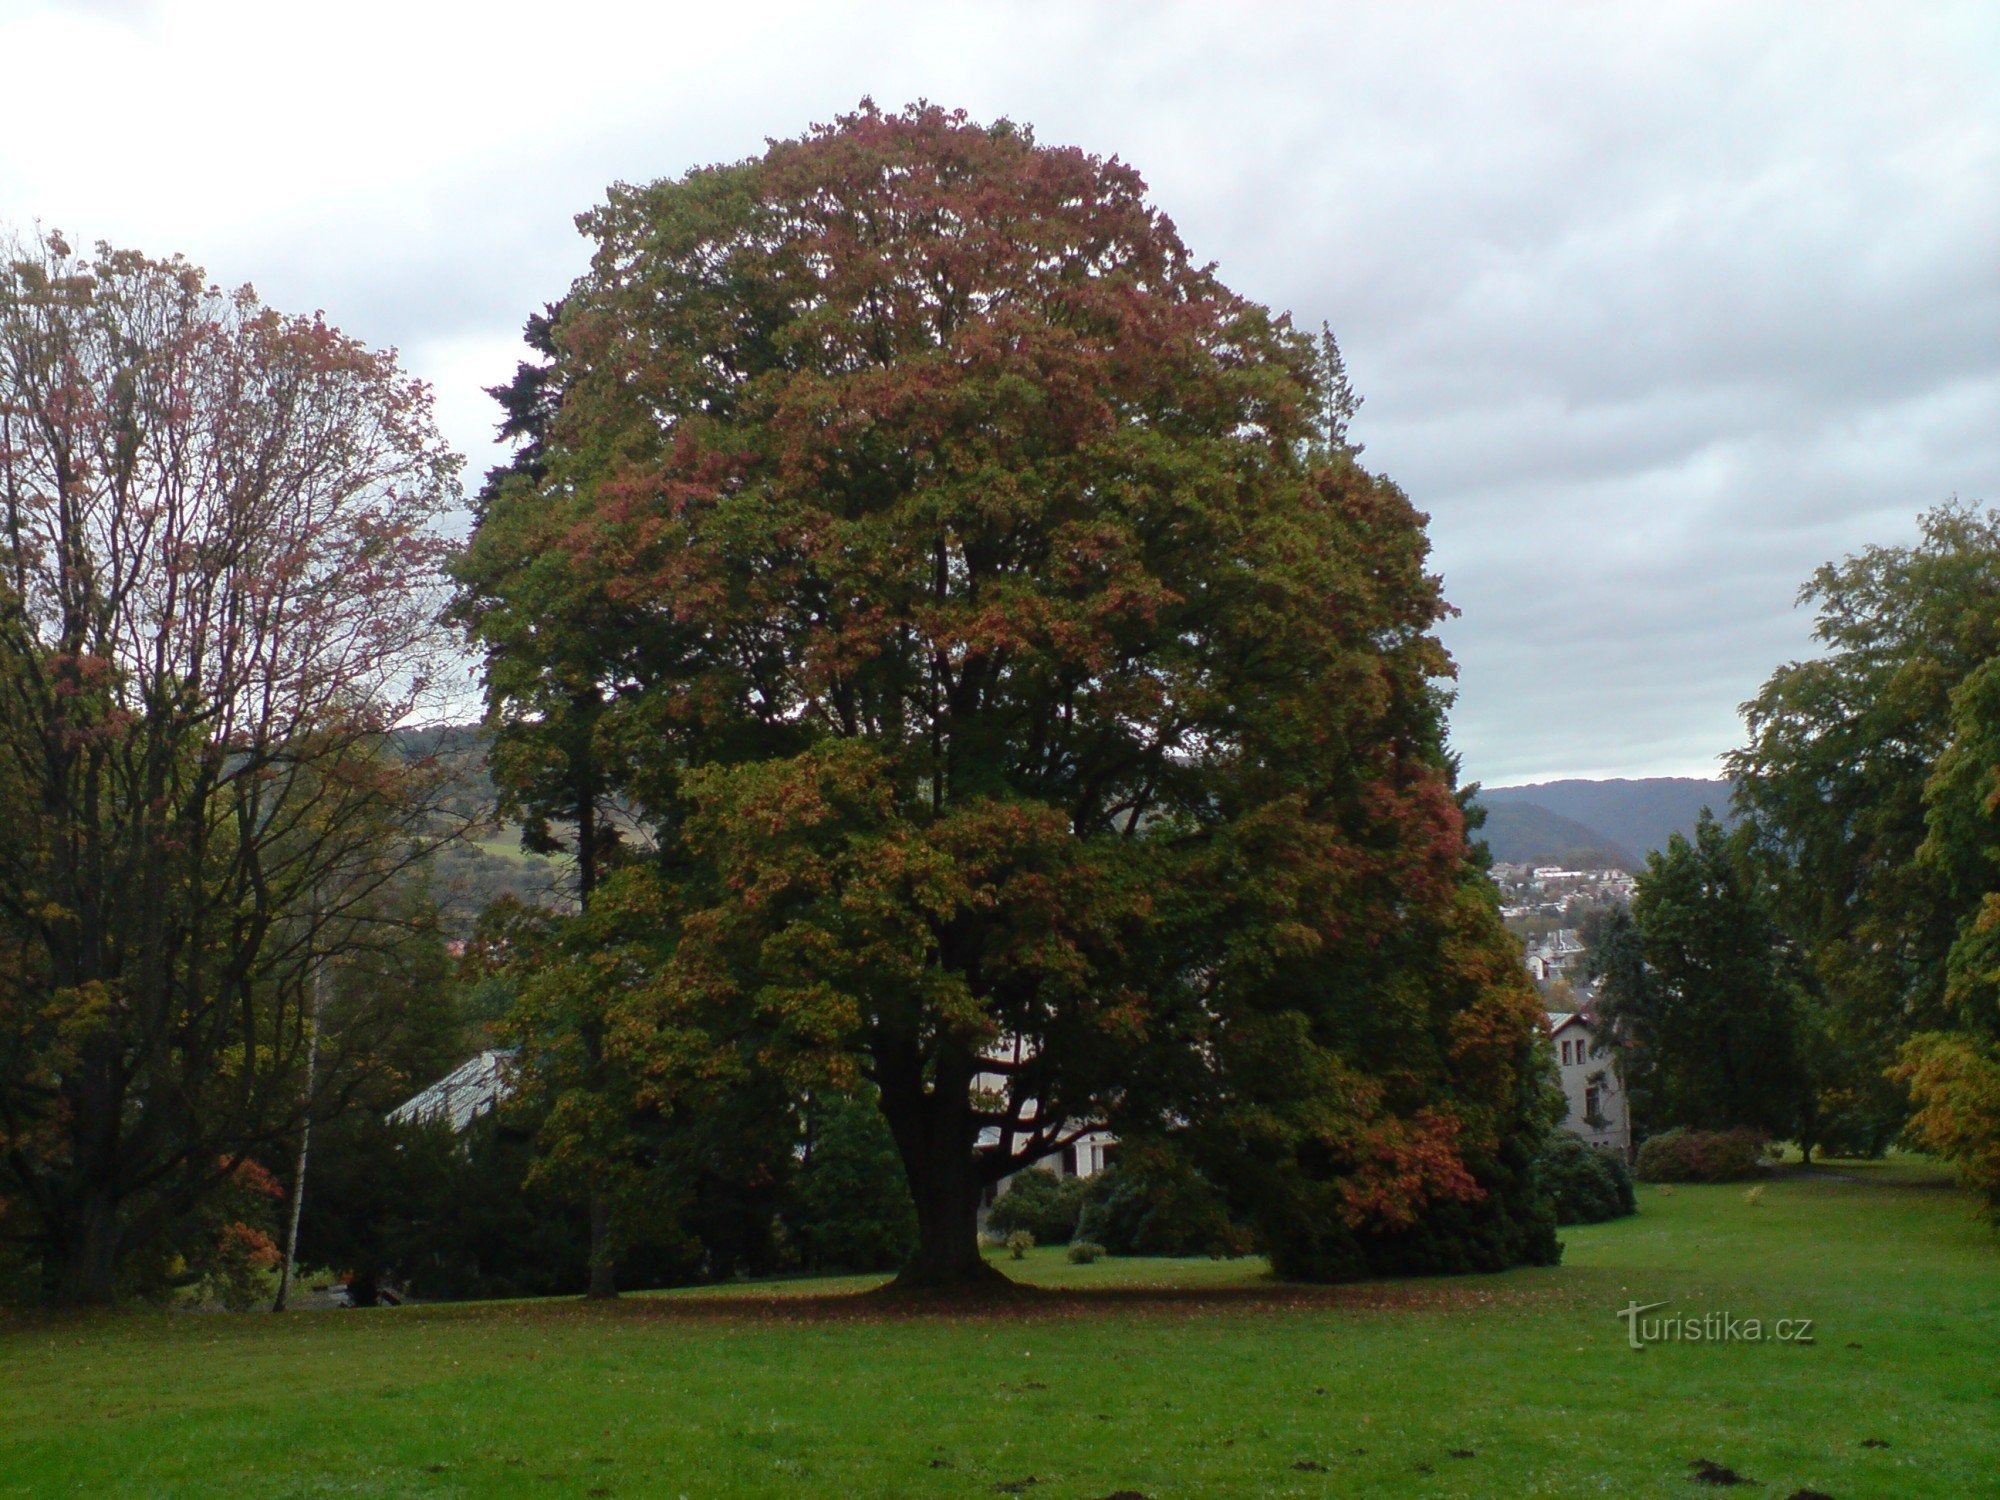 einer der vielen schönen Bäume im Schlosspark